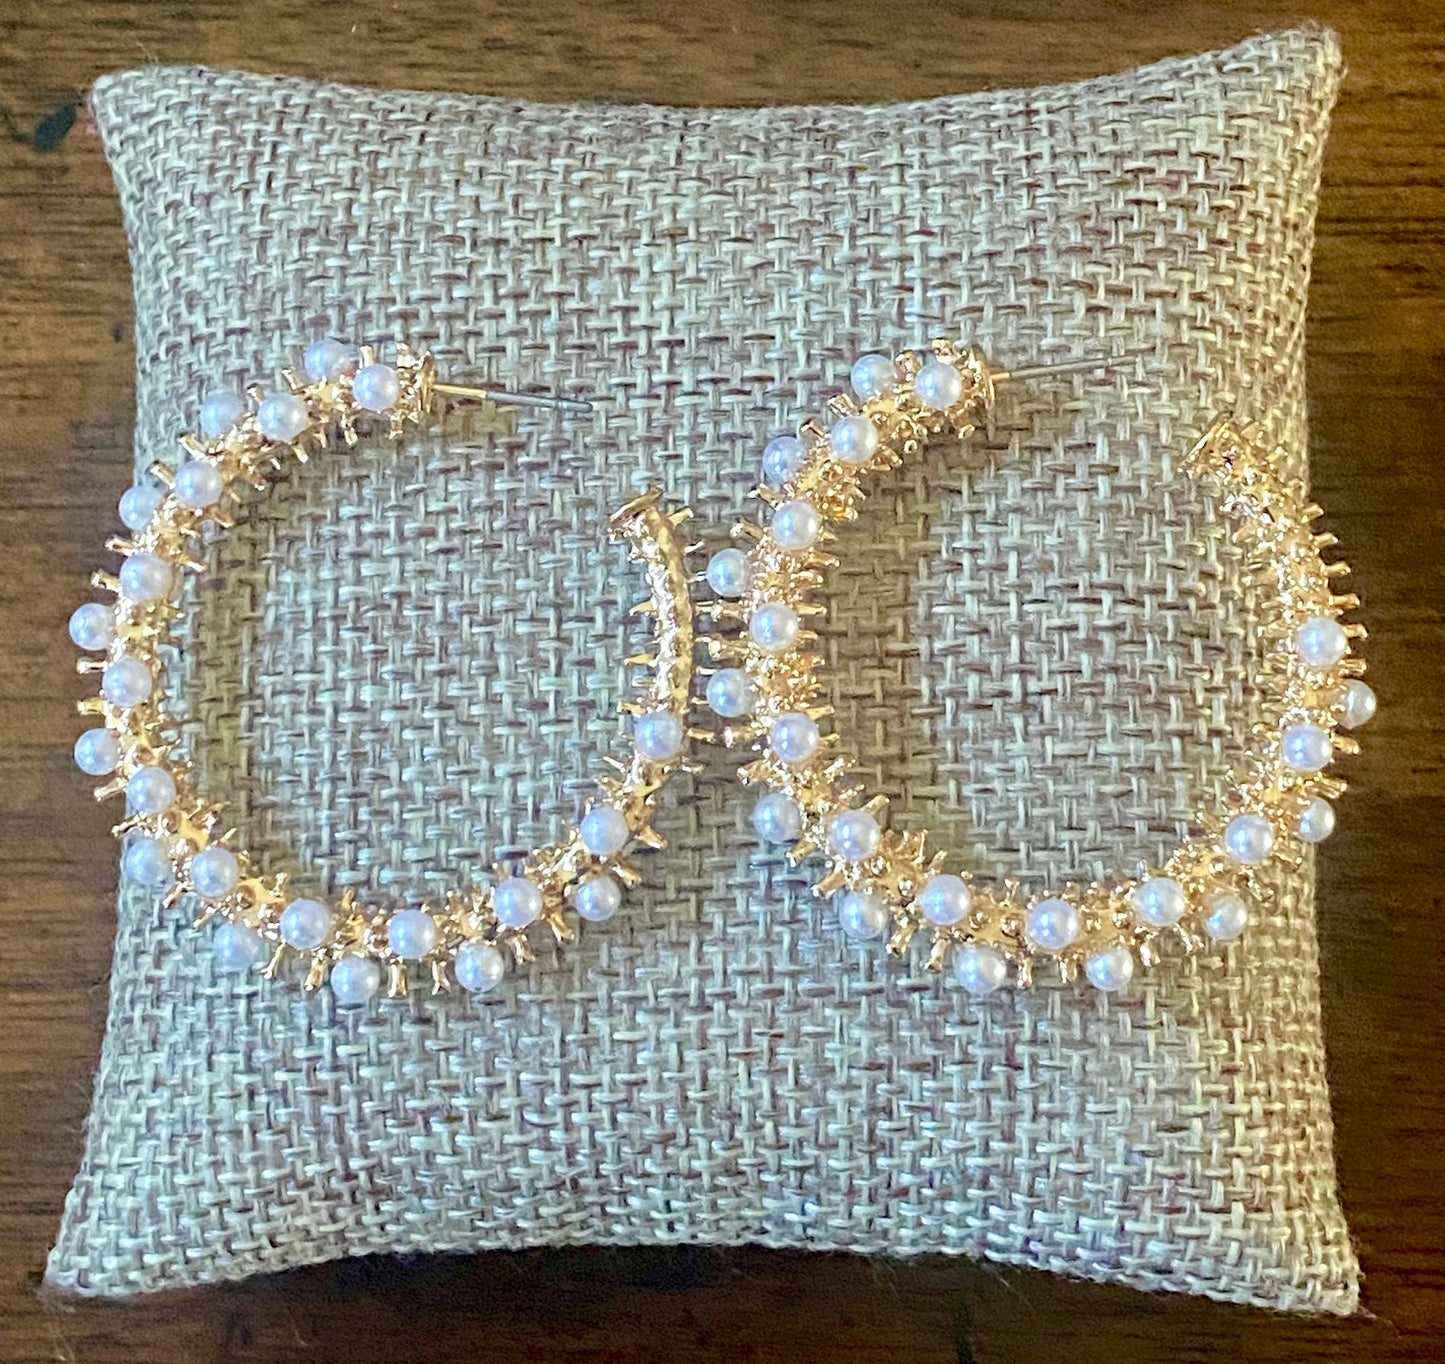 Gold and Pearl Hoop Earrings